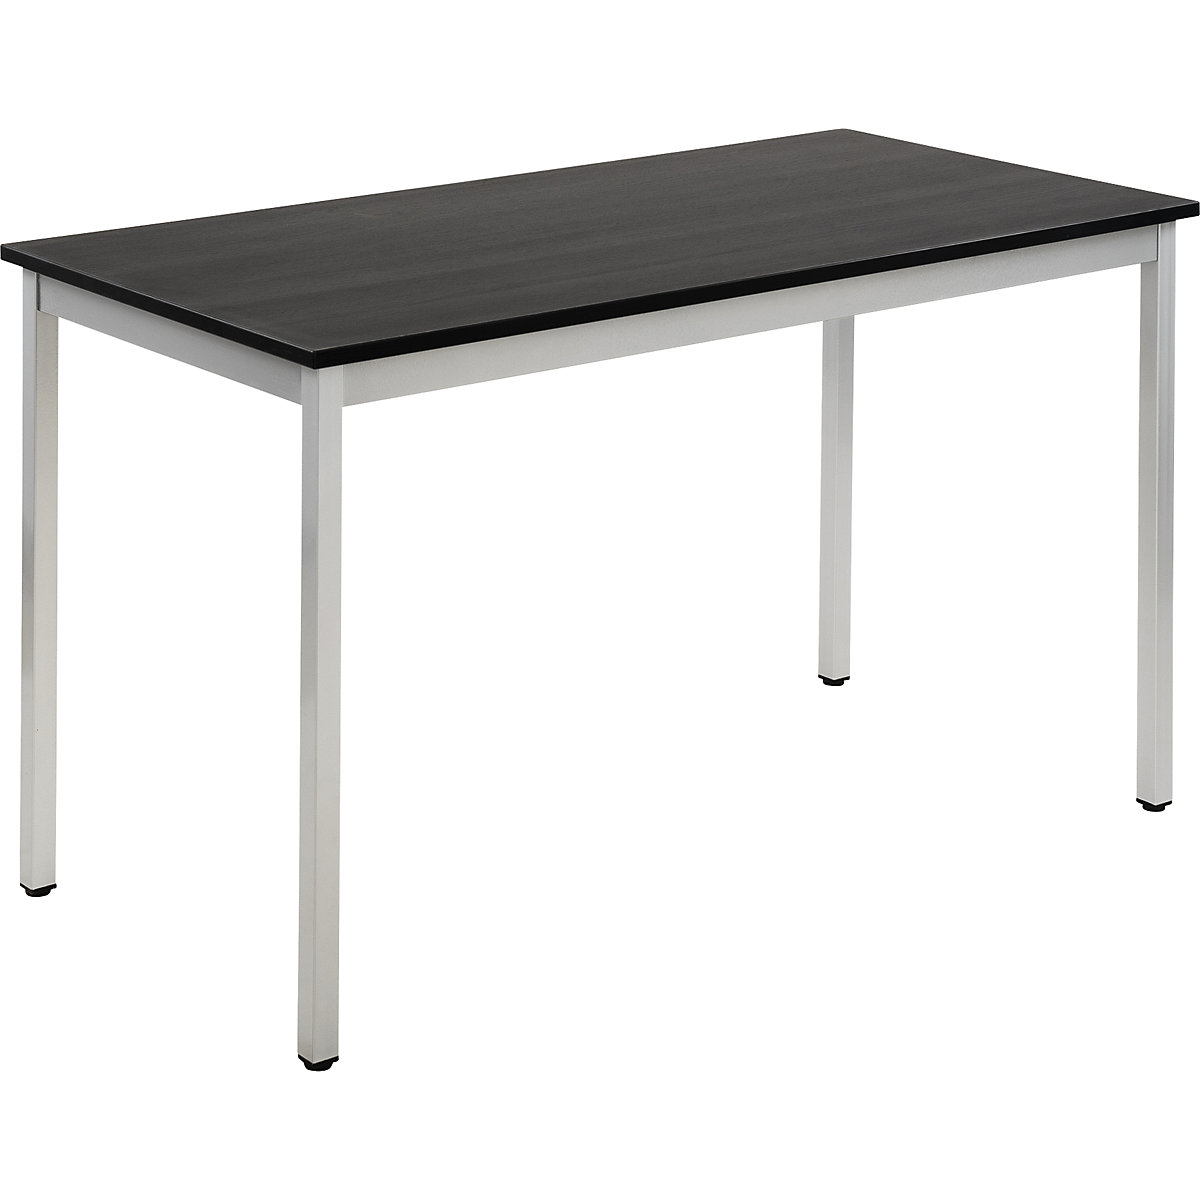 Table polyvalente – eurokraft basic, rectangulaire, l x h 1200 x 740 mm, profondeur 600 mm, plateau façon frêne gris foncé, piétement aluminium-17